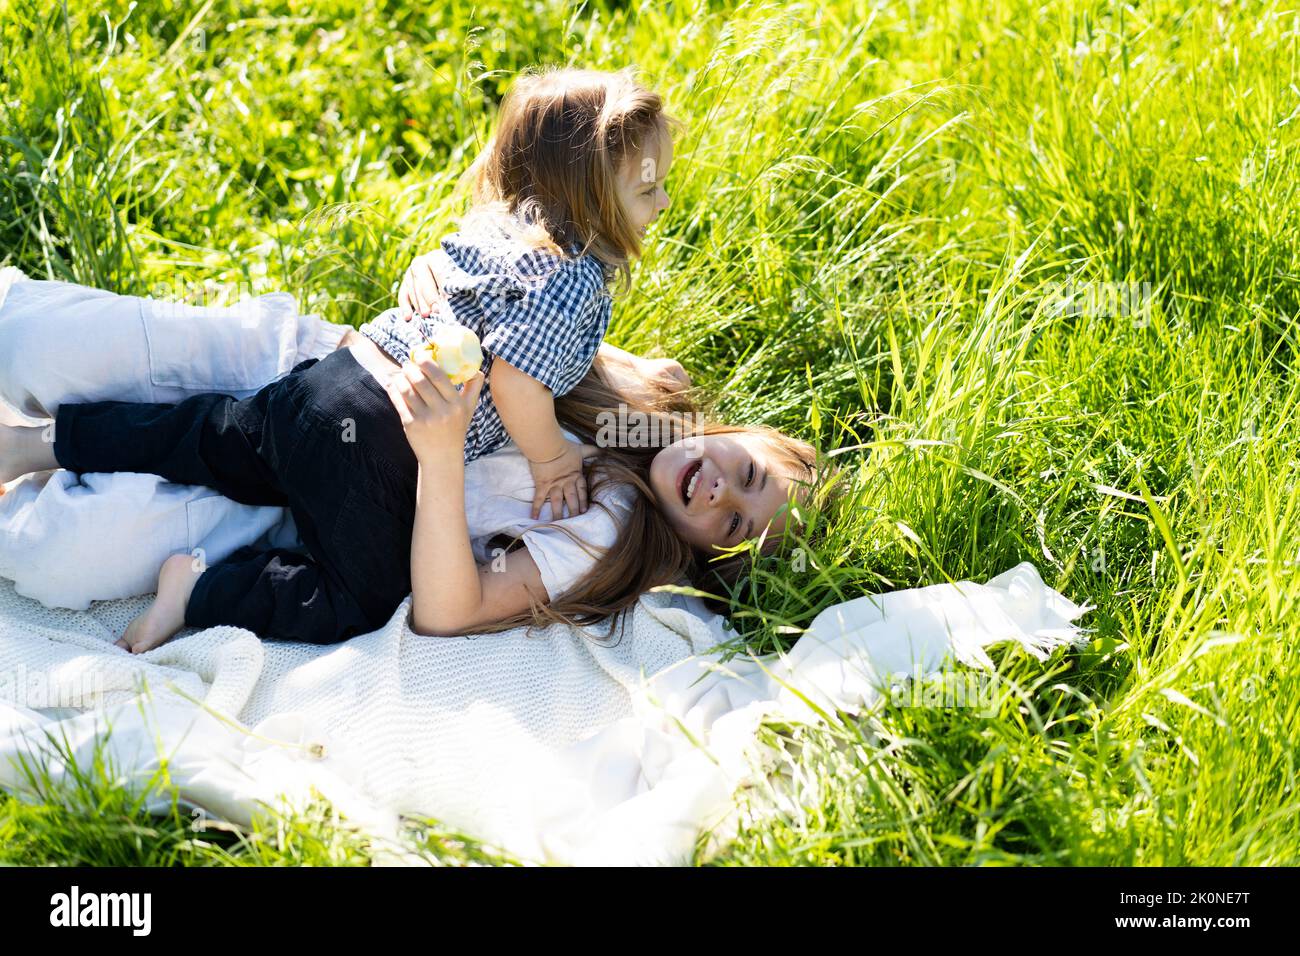 Frère et sœur se réjouîssent de rire, allongé sur l'herbe verte. Le soleil brille, les enfants sont heureux insouciant. Le concept d'une vie de famille heureuse et de liaison. Copier l'espace. Banque D'Images